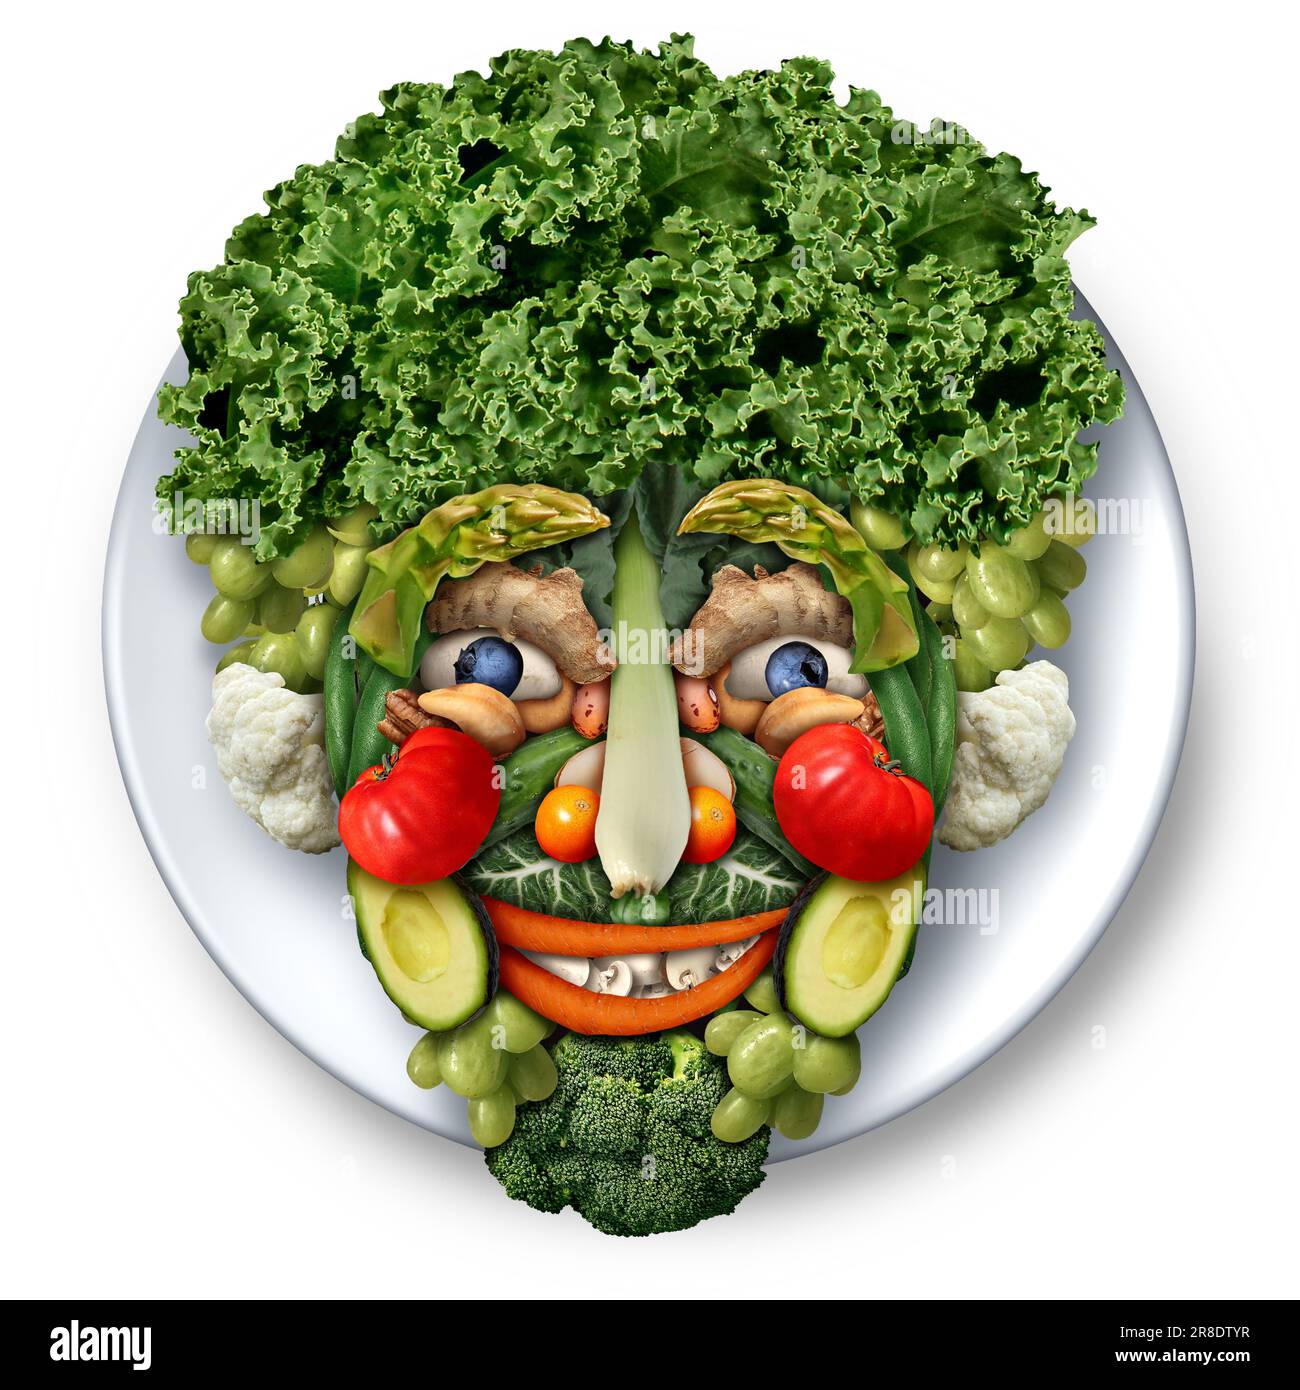 Sculpture alimentaire dirigez-vous comme un art comestible végétalien ou végétarien ou des sculptures alimentaires créatives en forme de visage. Banque D'Images